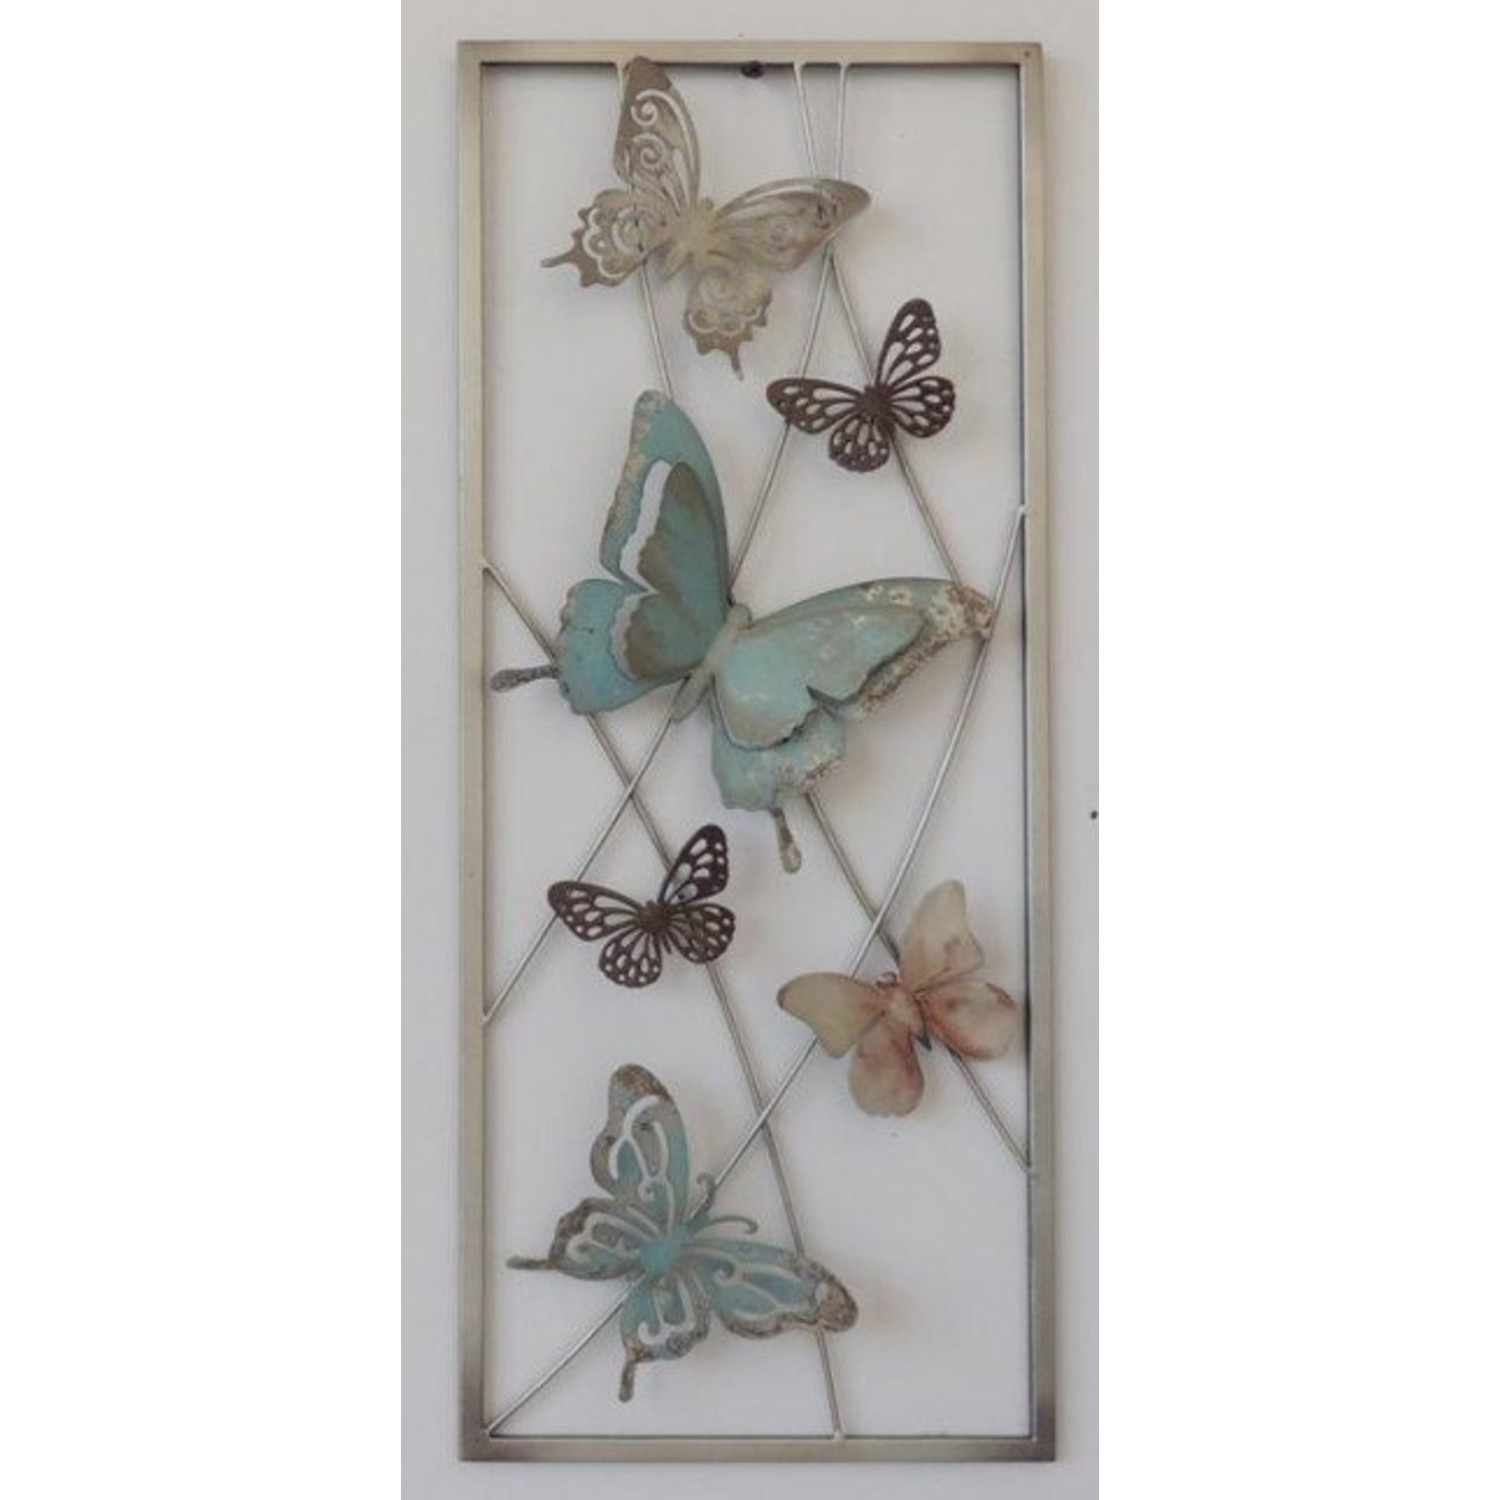 Varken Waterig huwelijk Wand decoratie vlinders 1 | Eliassen - Eliassen Home & Garden Pleasure